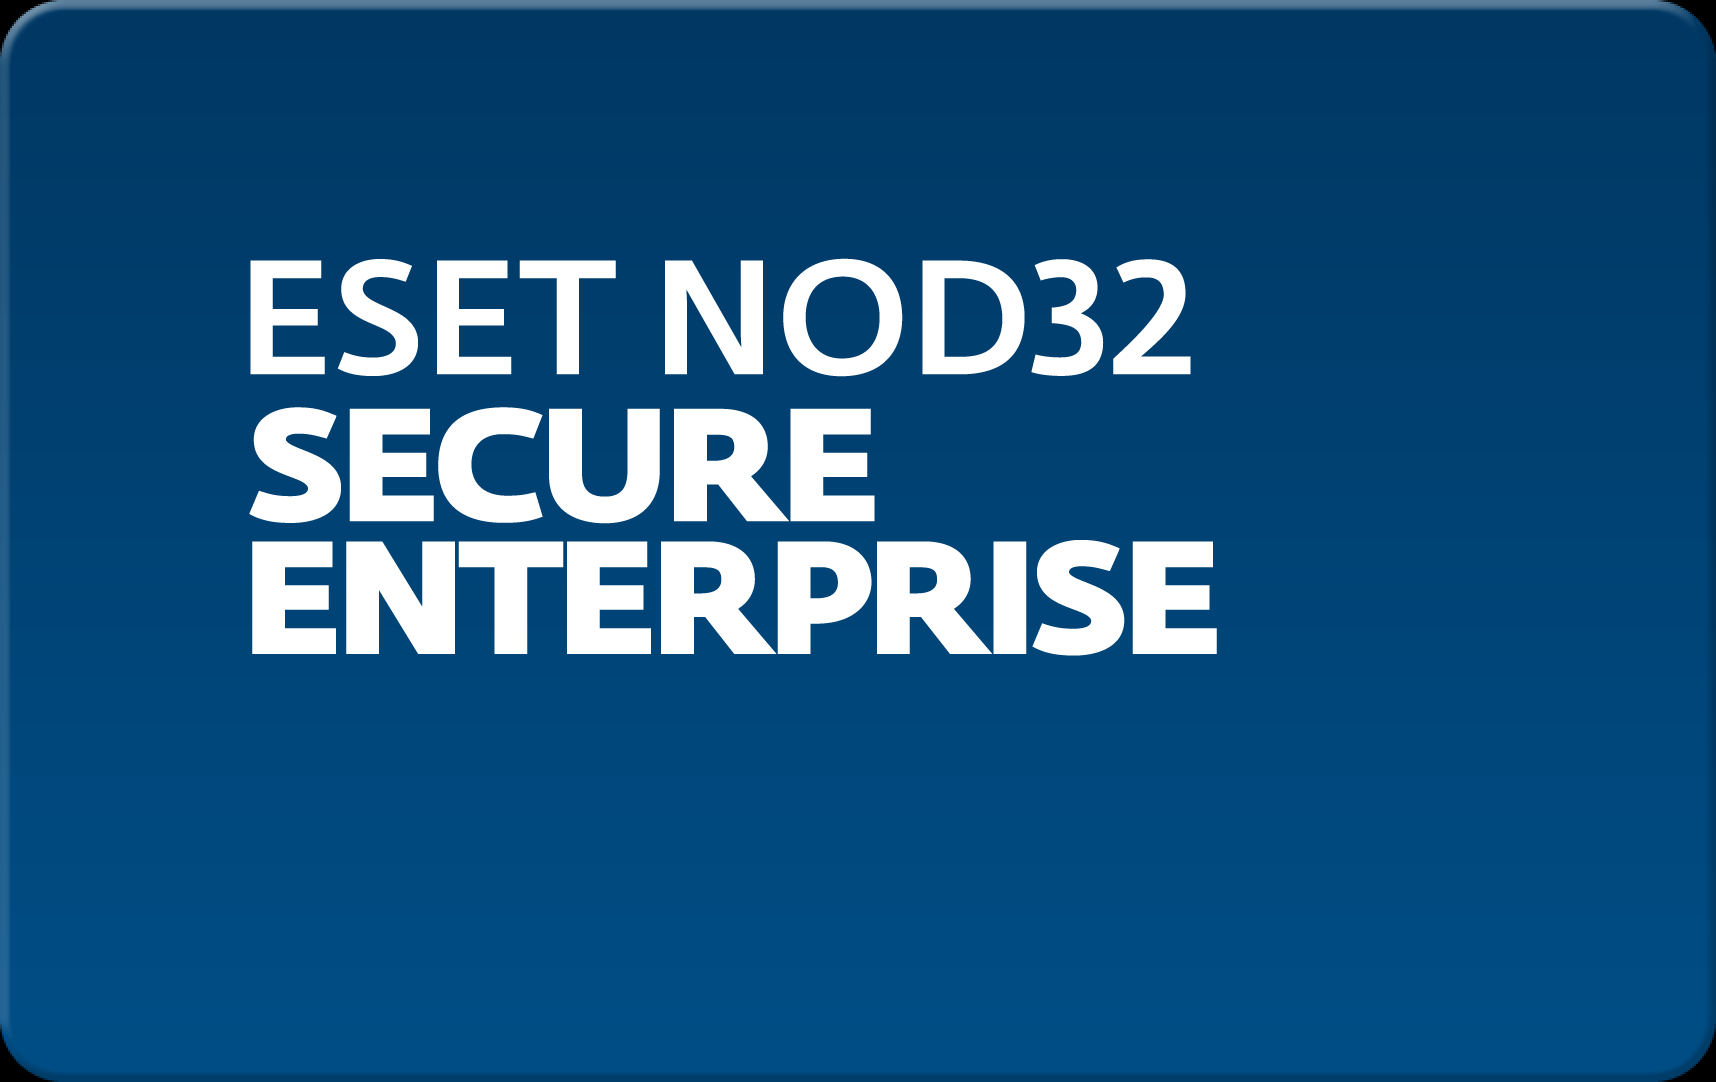        Eset NOD32 Secure Enterprise  176 